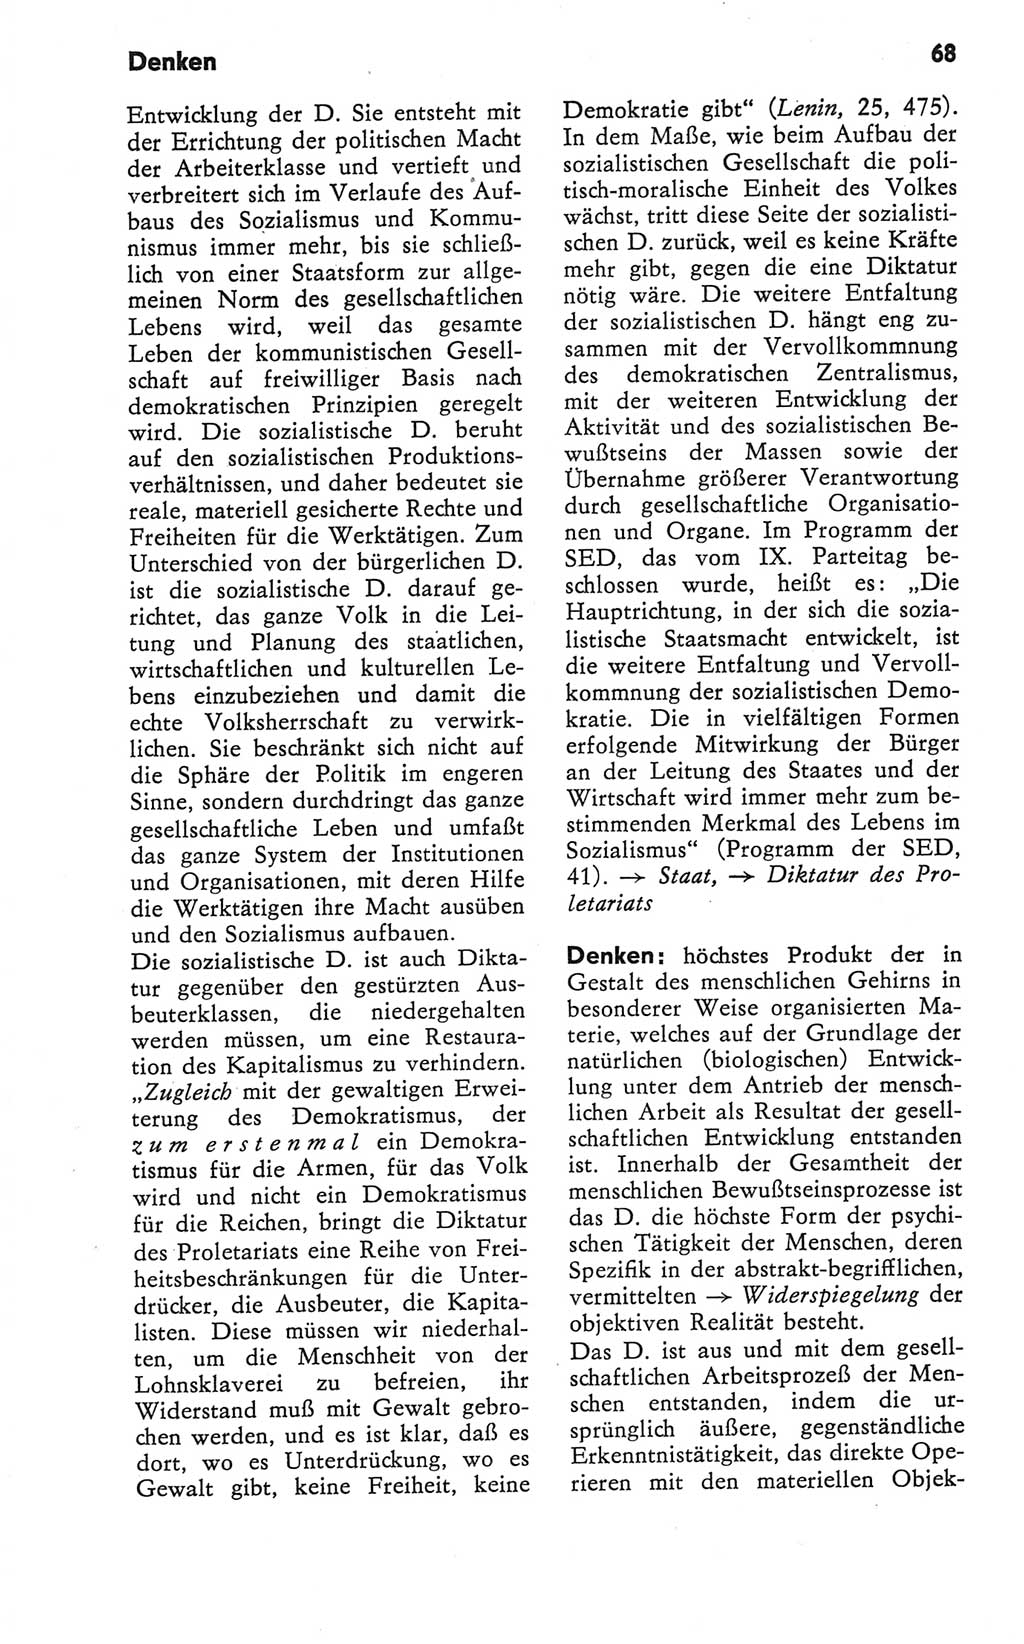 Kleines Wörterbuch der marxistisch-leninistischen Philosophie [Deutsche Demokratische Republik (DDR)] 1979, Seite 68 (Kl. Wb. ML Phil. DDR 1979, S. 68)